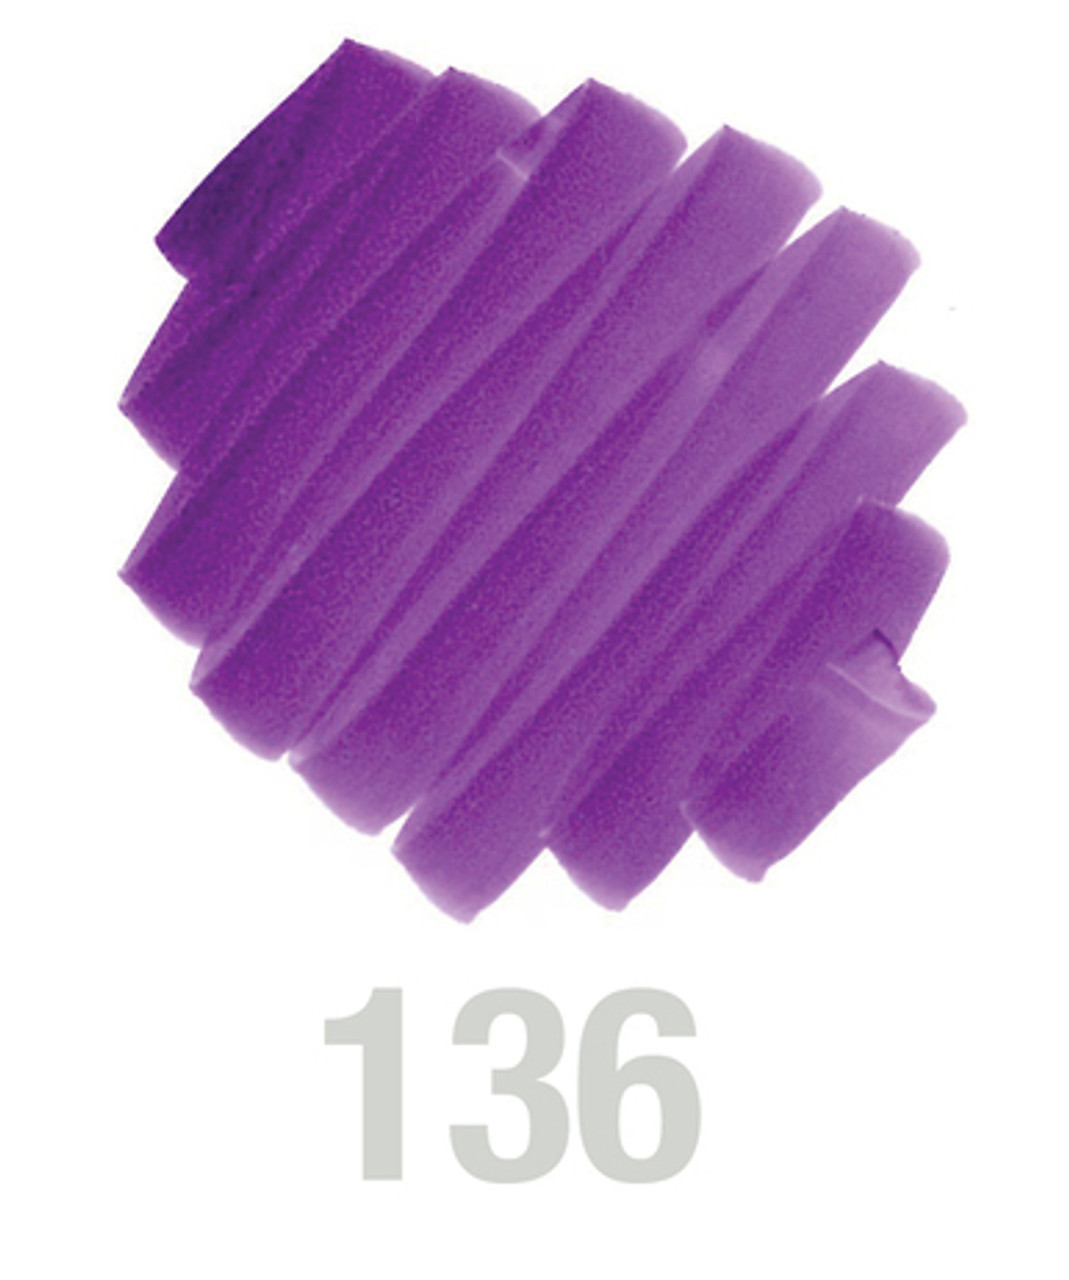 Pitt Artist Brush Pen, 136 Purple Violet